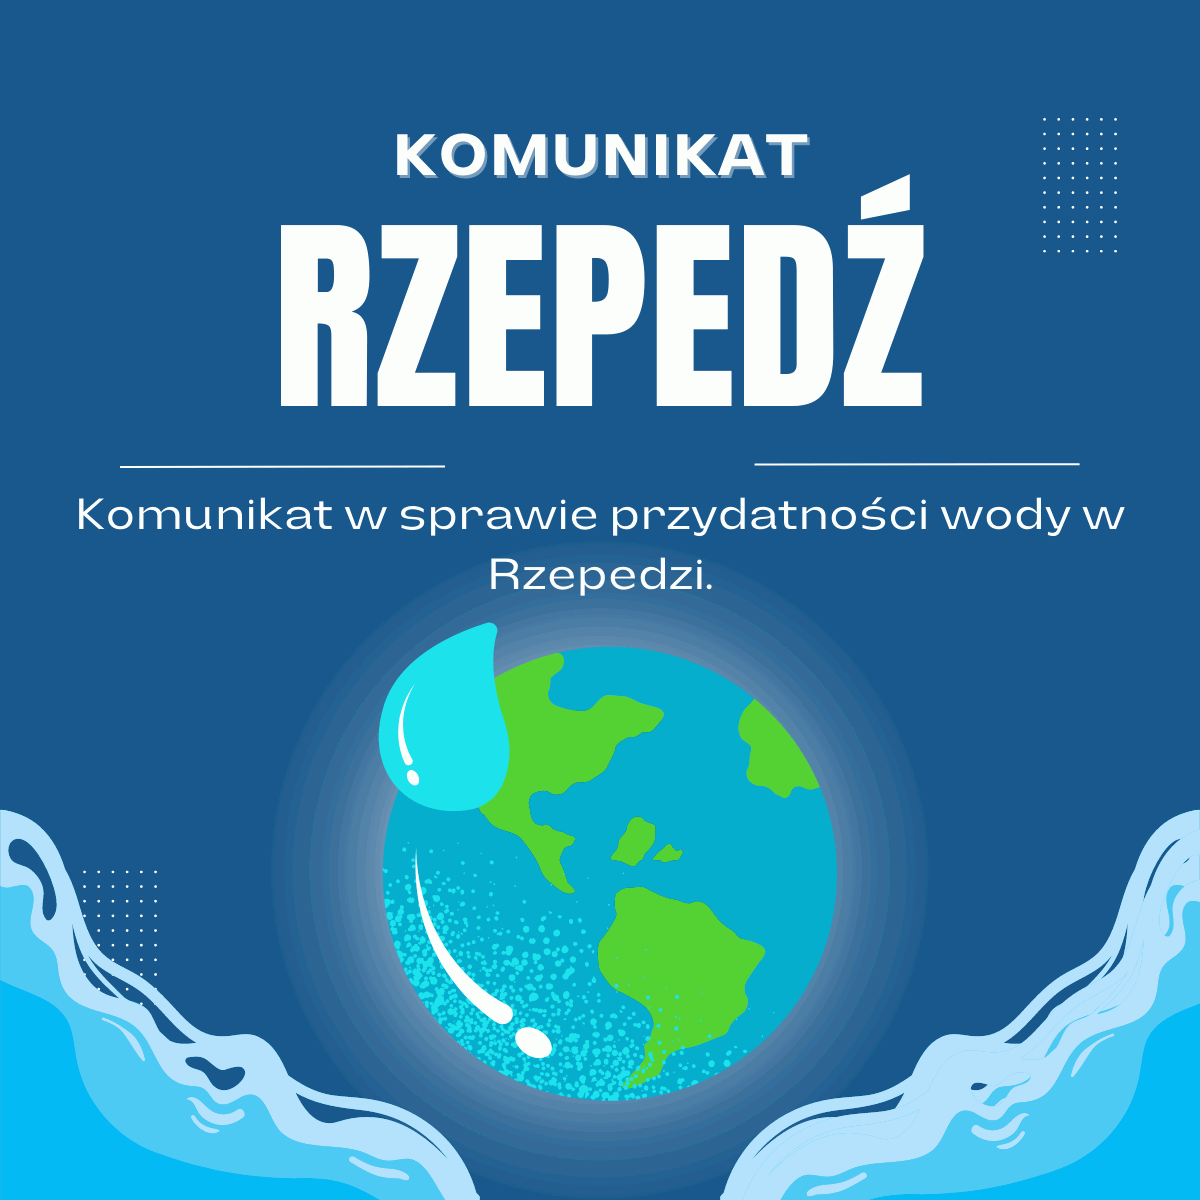 Komunikat w sprawie przydatności wody w Rzepedzi.